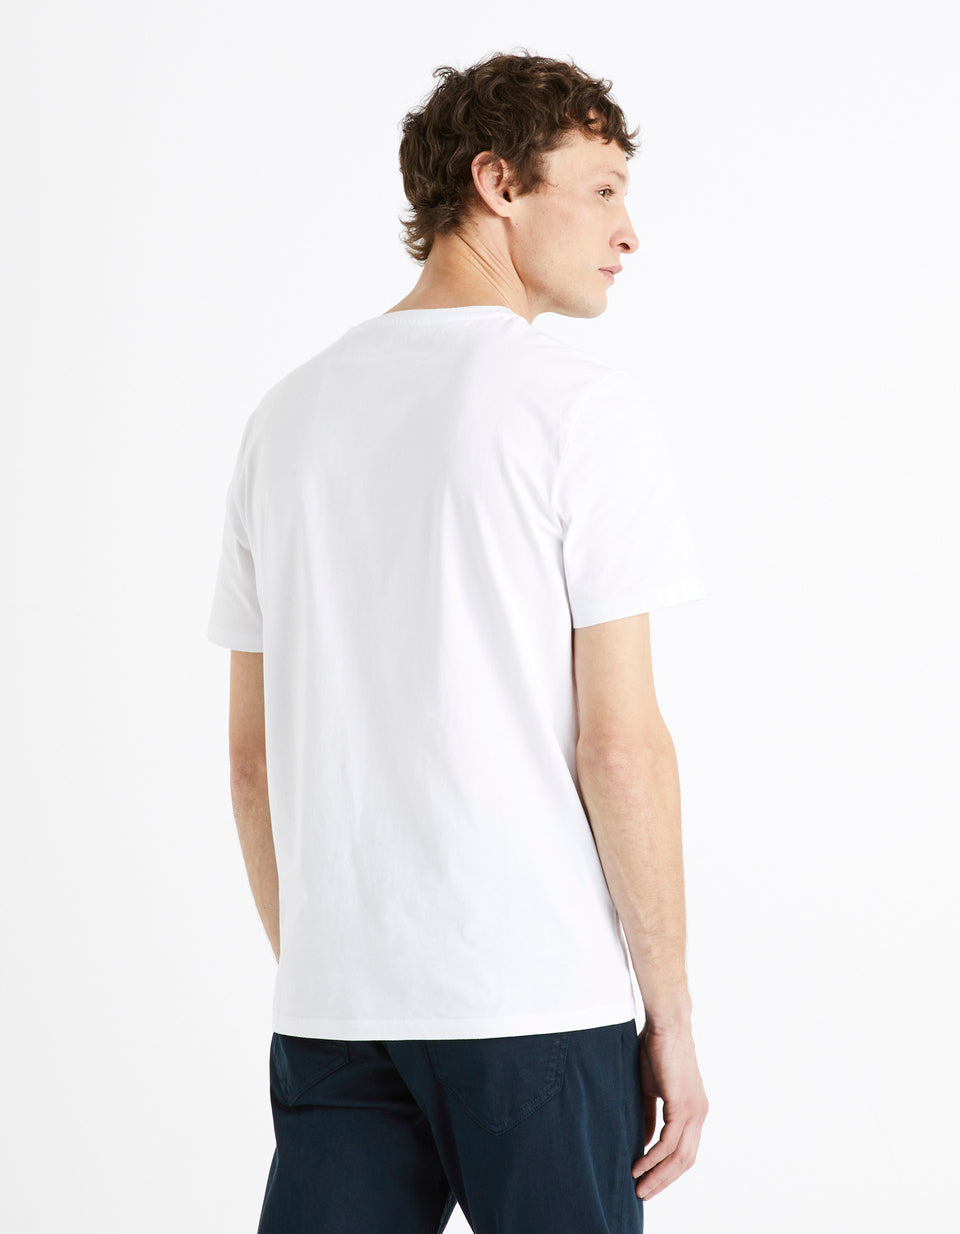 T-Shirt Cotton Round Neck 100% Coton - Optical White - 02